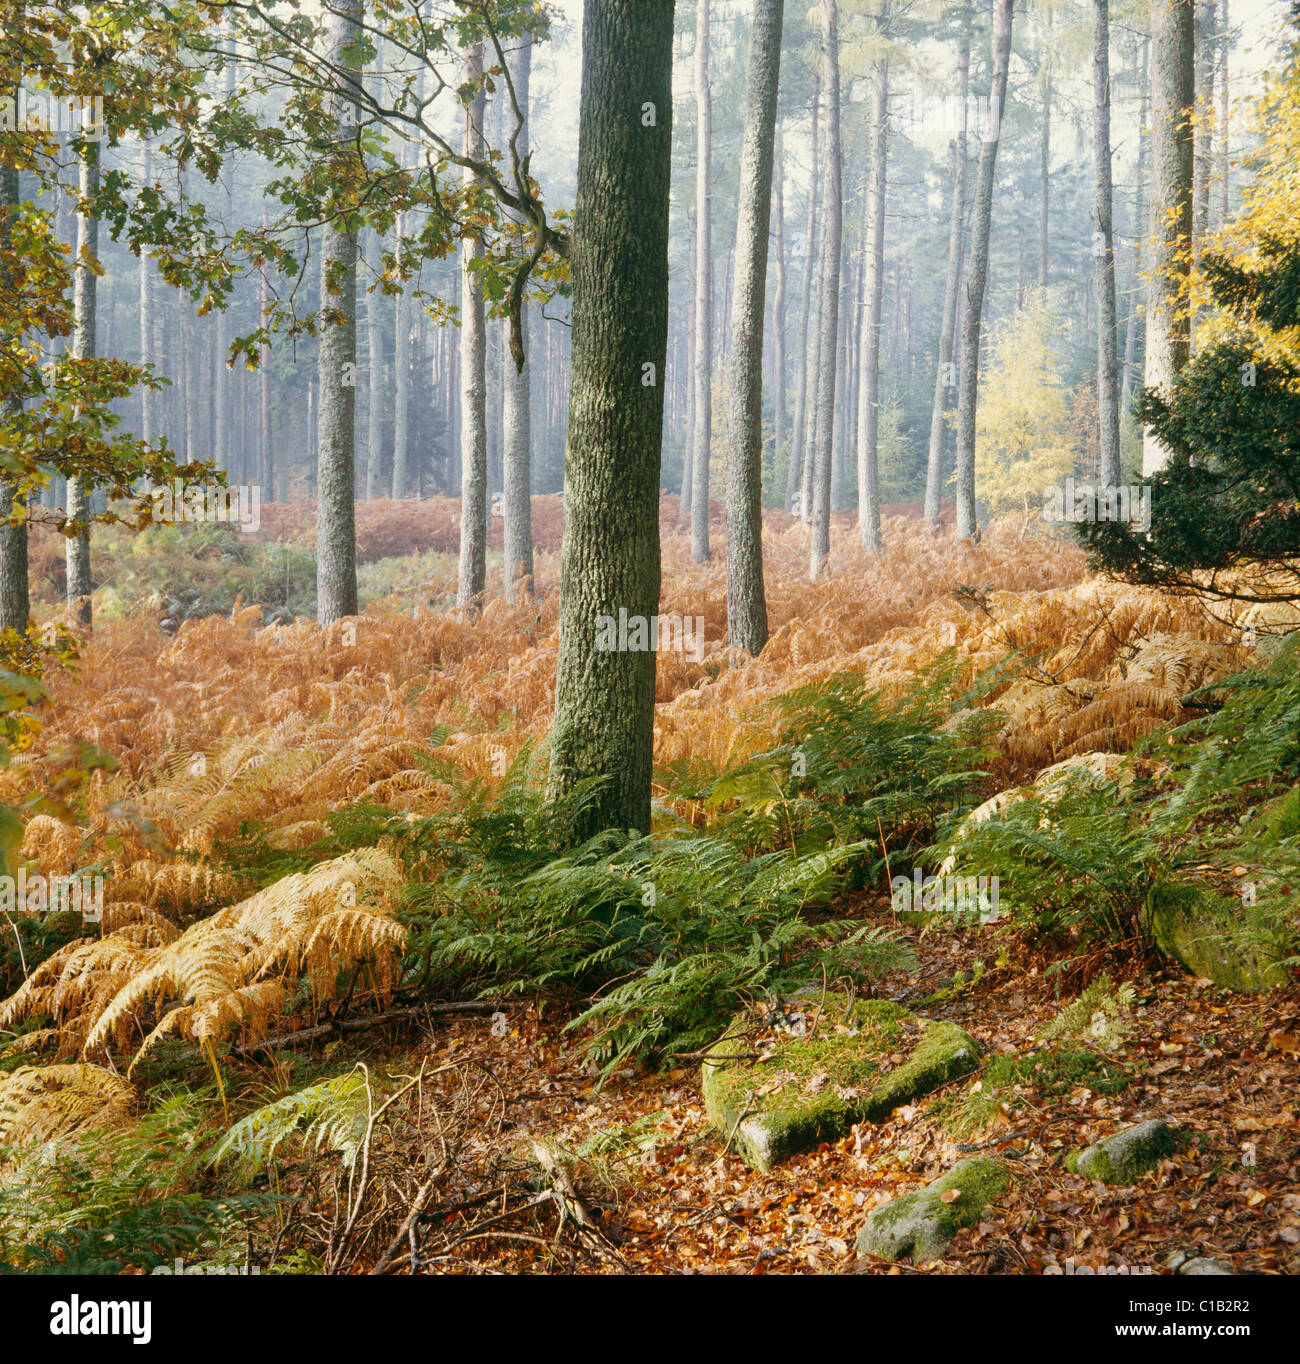 Dettaglio del suolo della foresta nel bosco misto in autunno, Shambellie legno, Dumfries Foto Stock